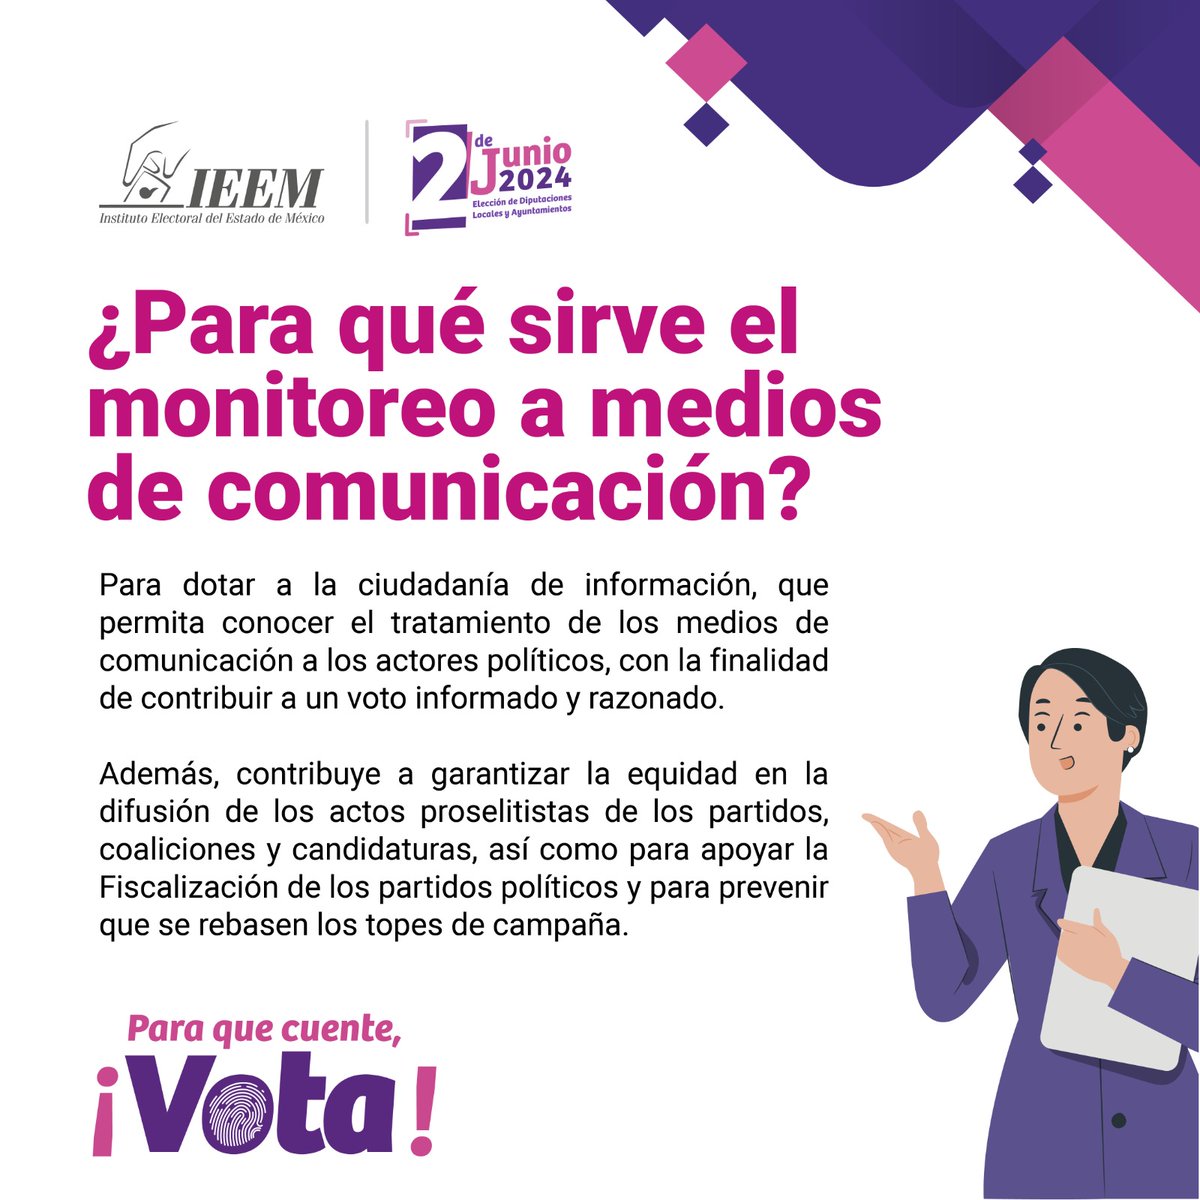 ¿Sabes para qué sirve el monitoreo a medios de comunicación? #Infórmate 🤓 #Elecciones2024MX #ParaQueCuenteVota #2deJunio